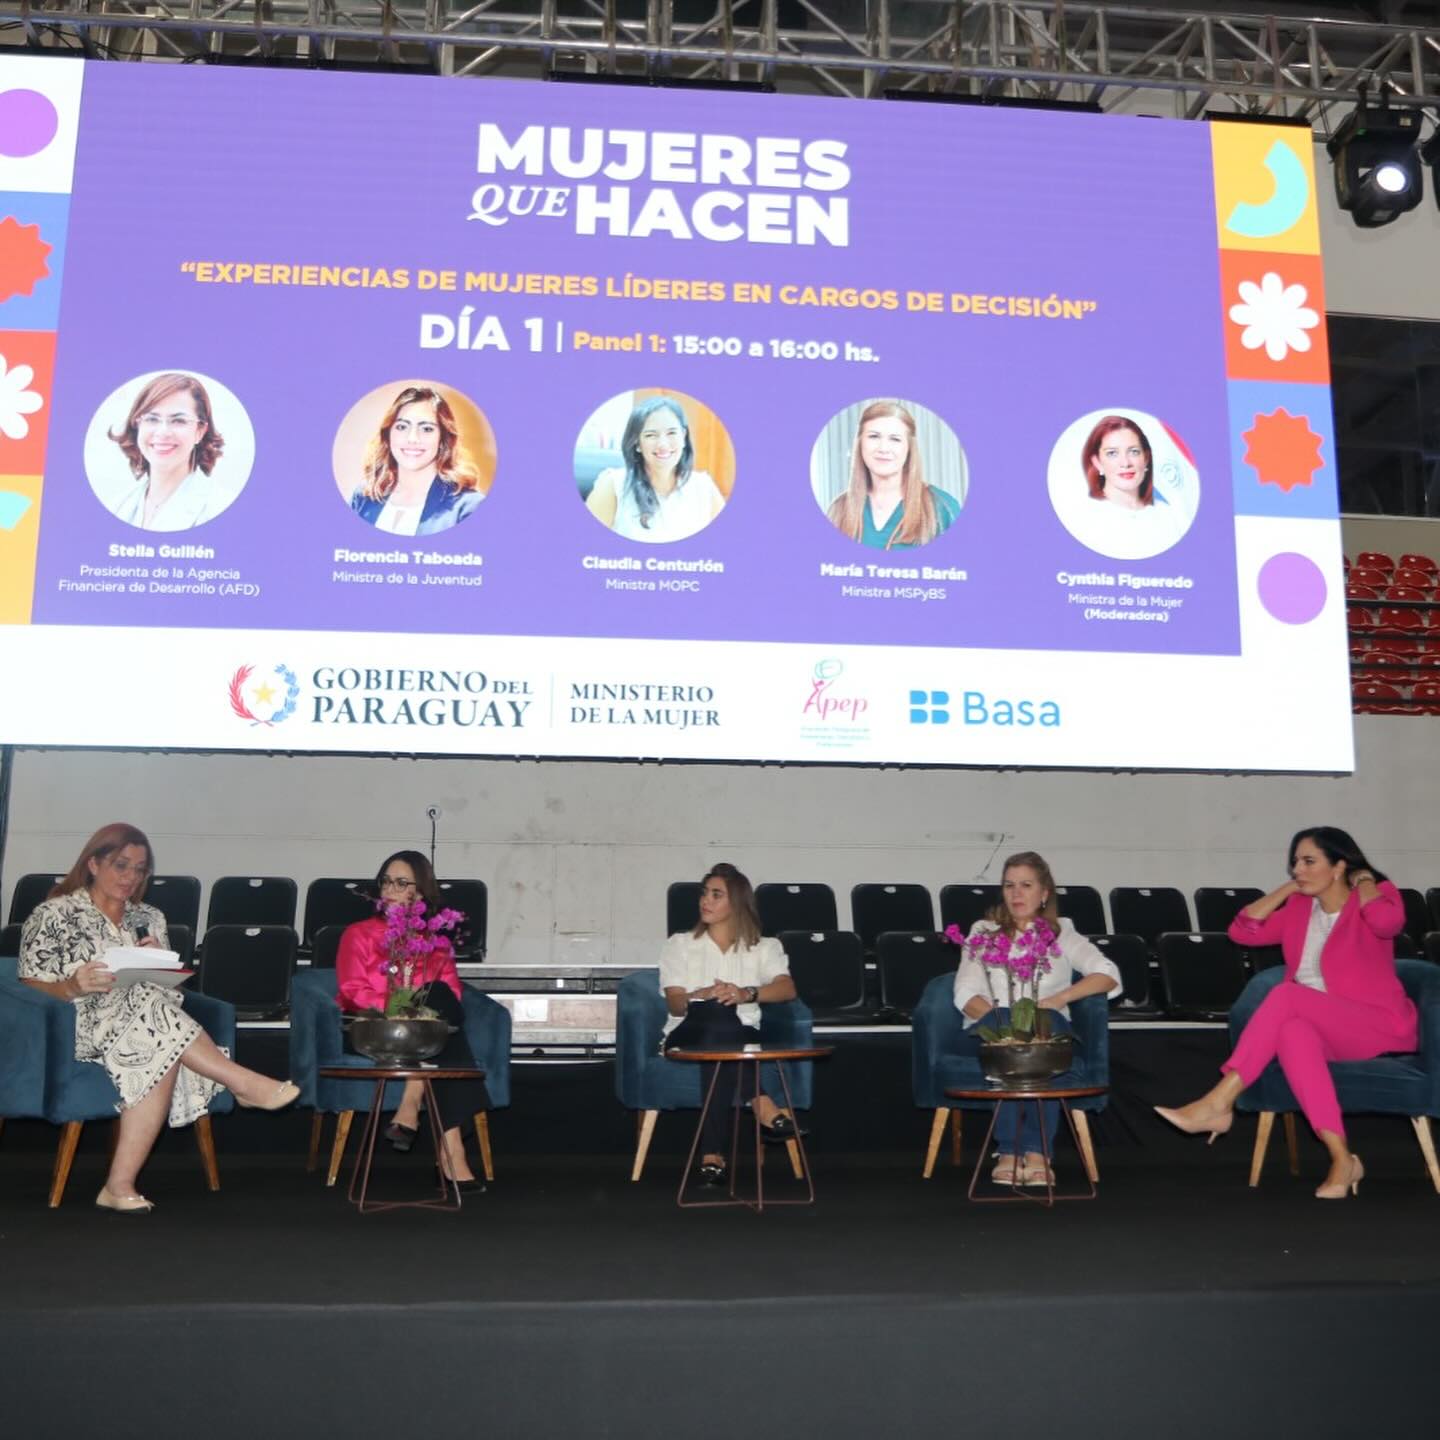  Expo Foro “Mujeres que Hacen” inicia con feria de emprendedoras y espacios de diálogo